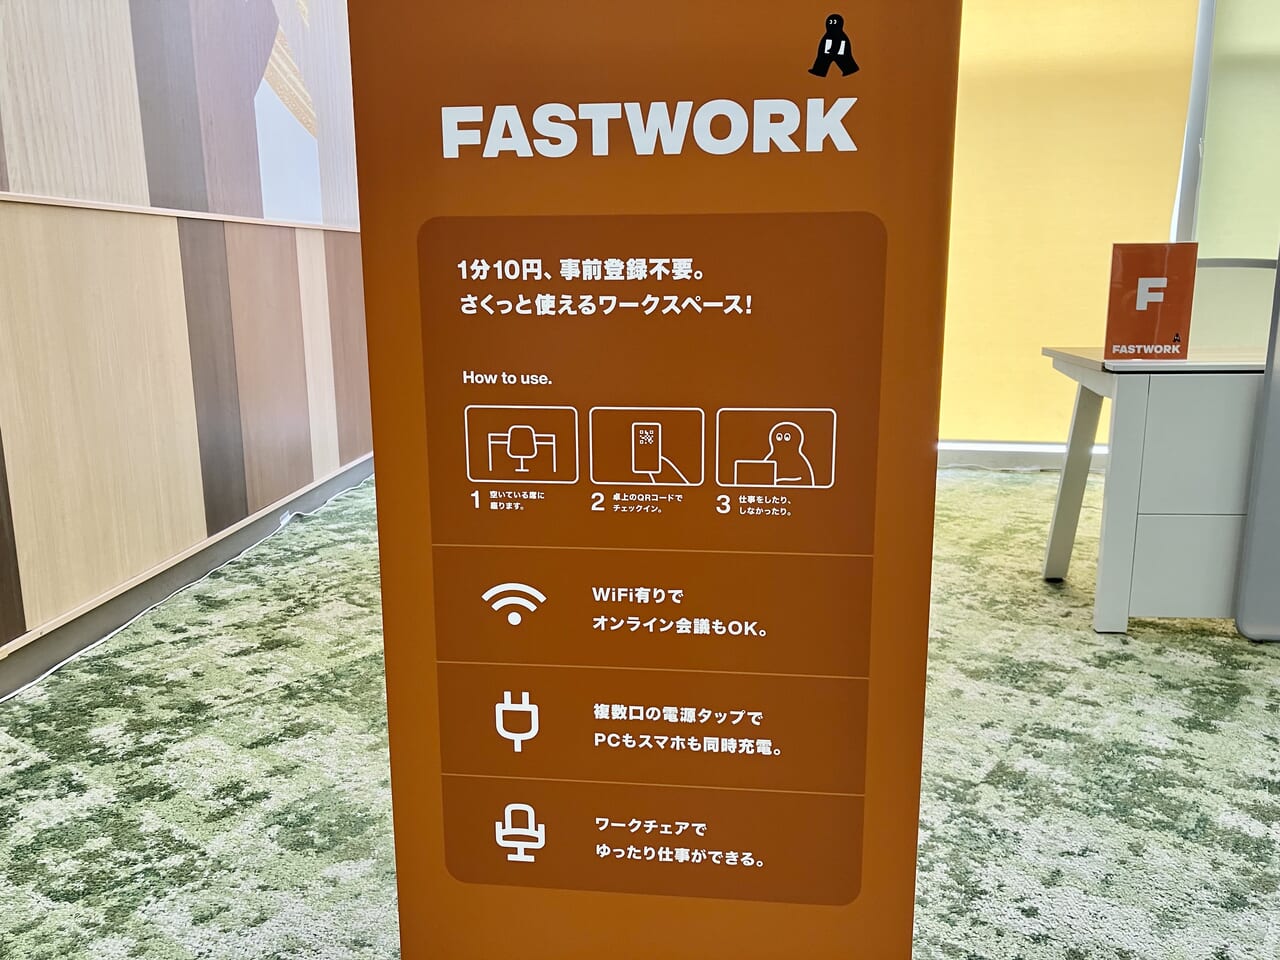 「アリオ札幌」に1分単位で利用できるワークスペースがあるって知ってた？ 「FASTWORK（ファストワーク）」